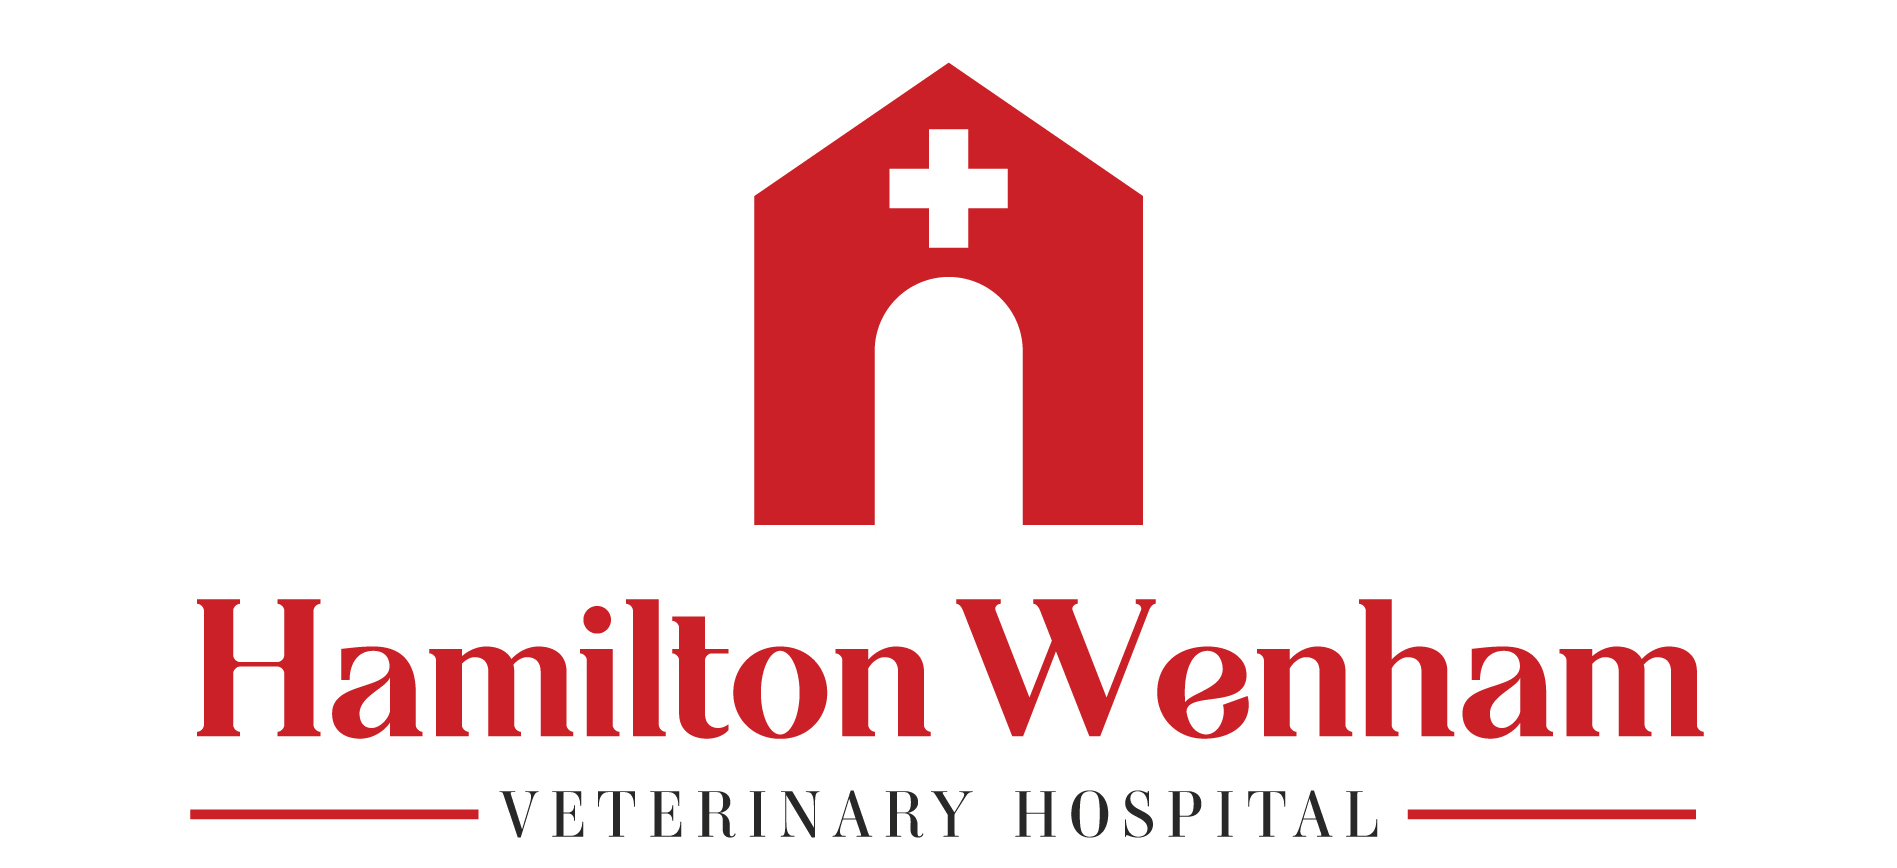 Hamilton Wenham Veterinary Hospital